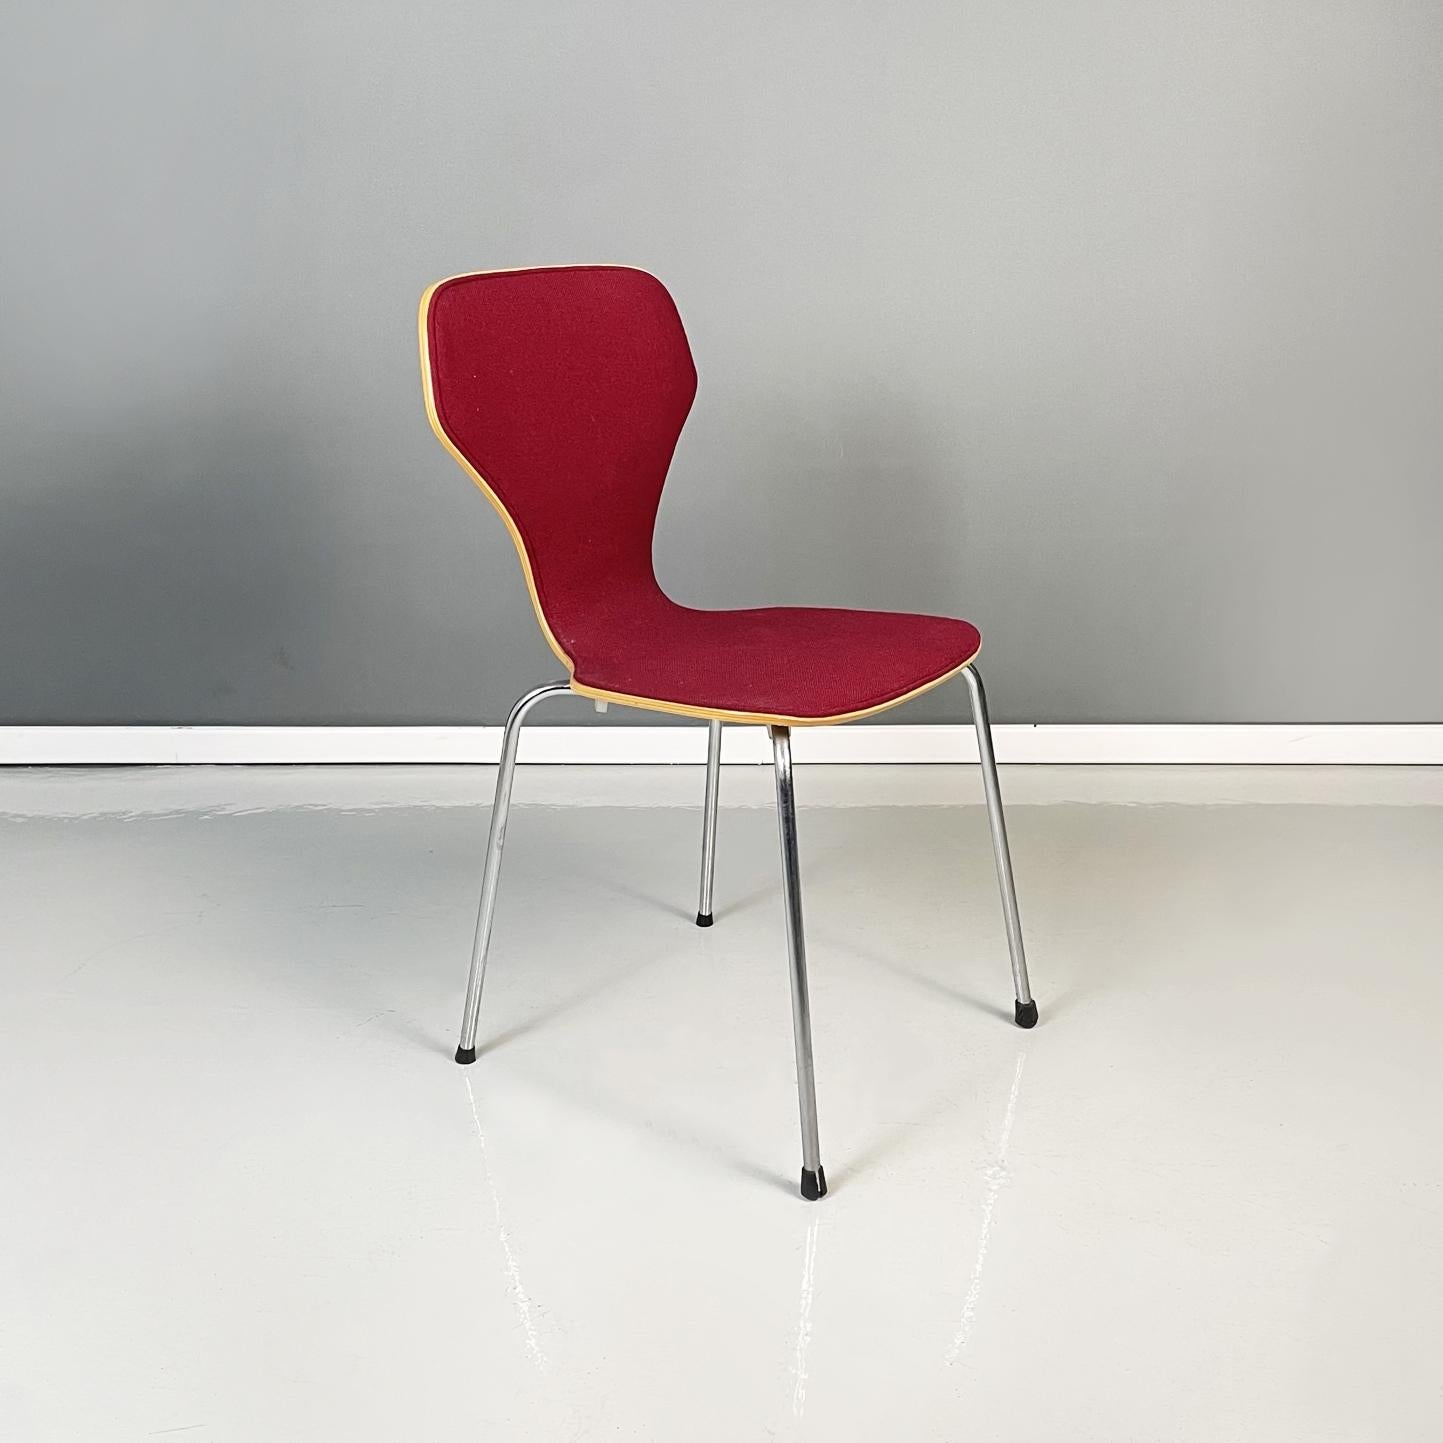 Chaise moderne danoise en bois, tissu bordeaux et acier, signée Phoenix, années 1970.
Chaise de salle à manger danoise en bois courbé, avec assise et dossier recouverts de tissu rouge bordeaux. Les jambes sont en acier avec des pieds en caoutchouc